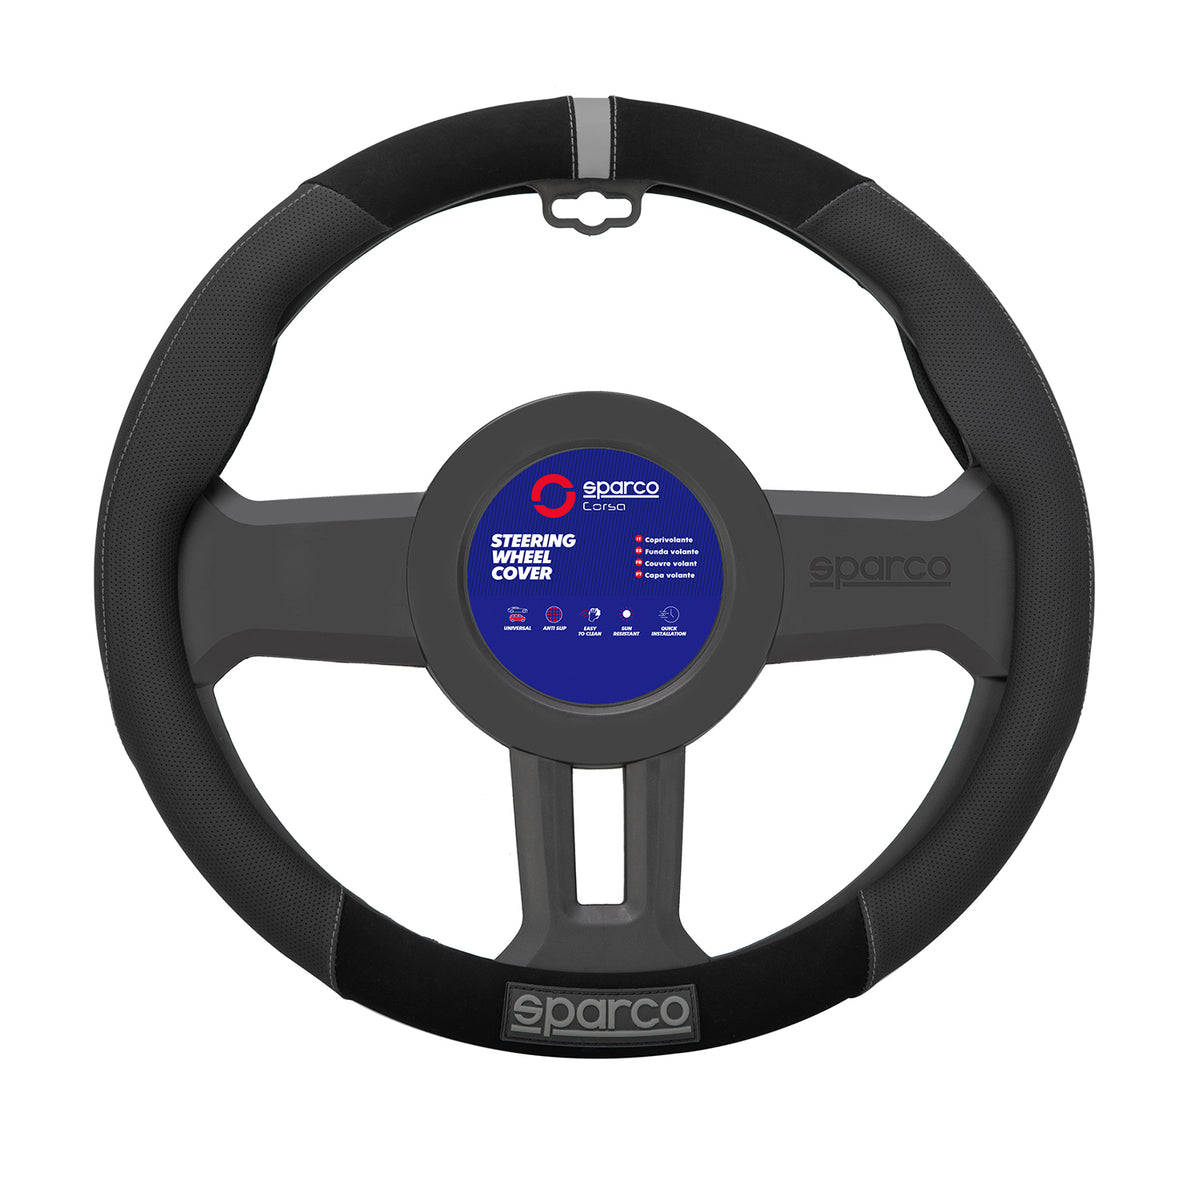 SPARCO steering wheel covers, steering wheel protector, steering wheel protection, black, gray, rubber suede